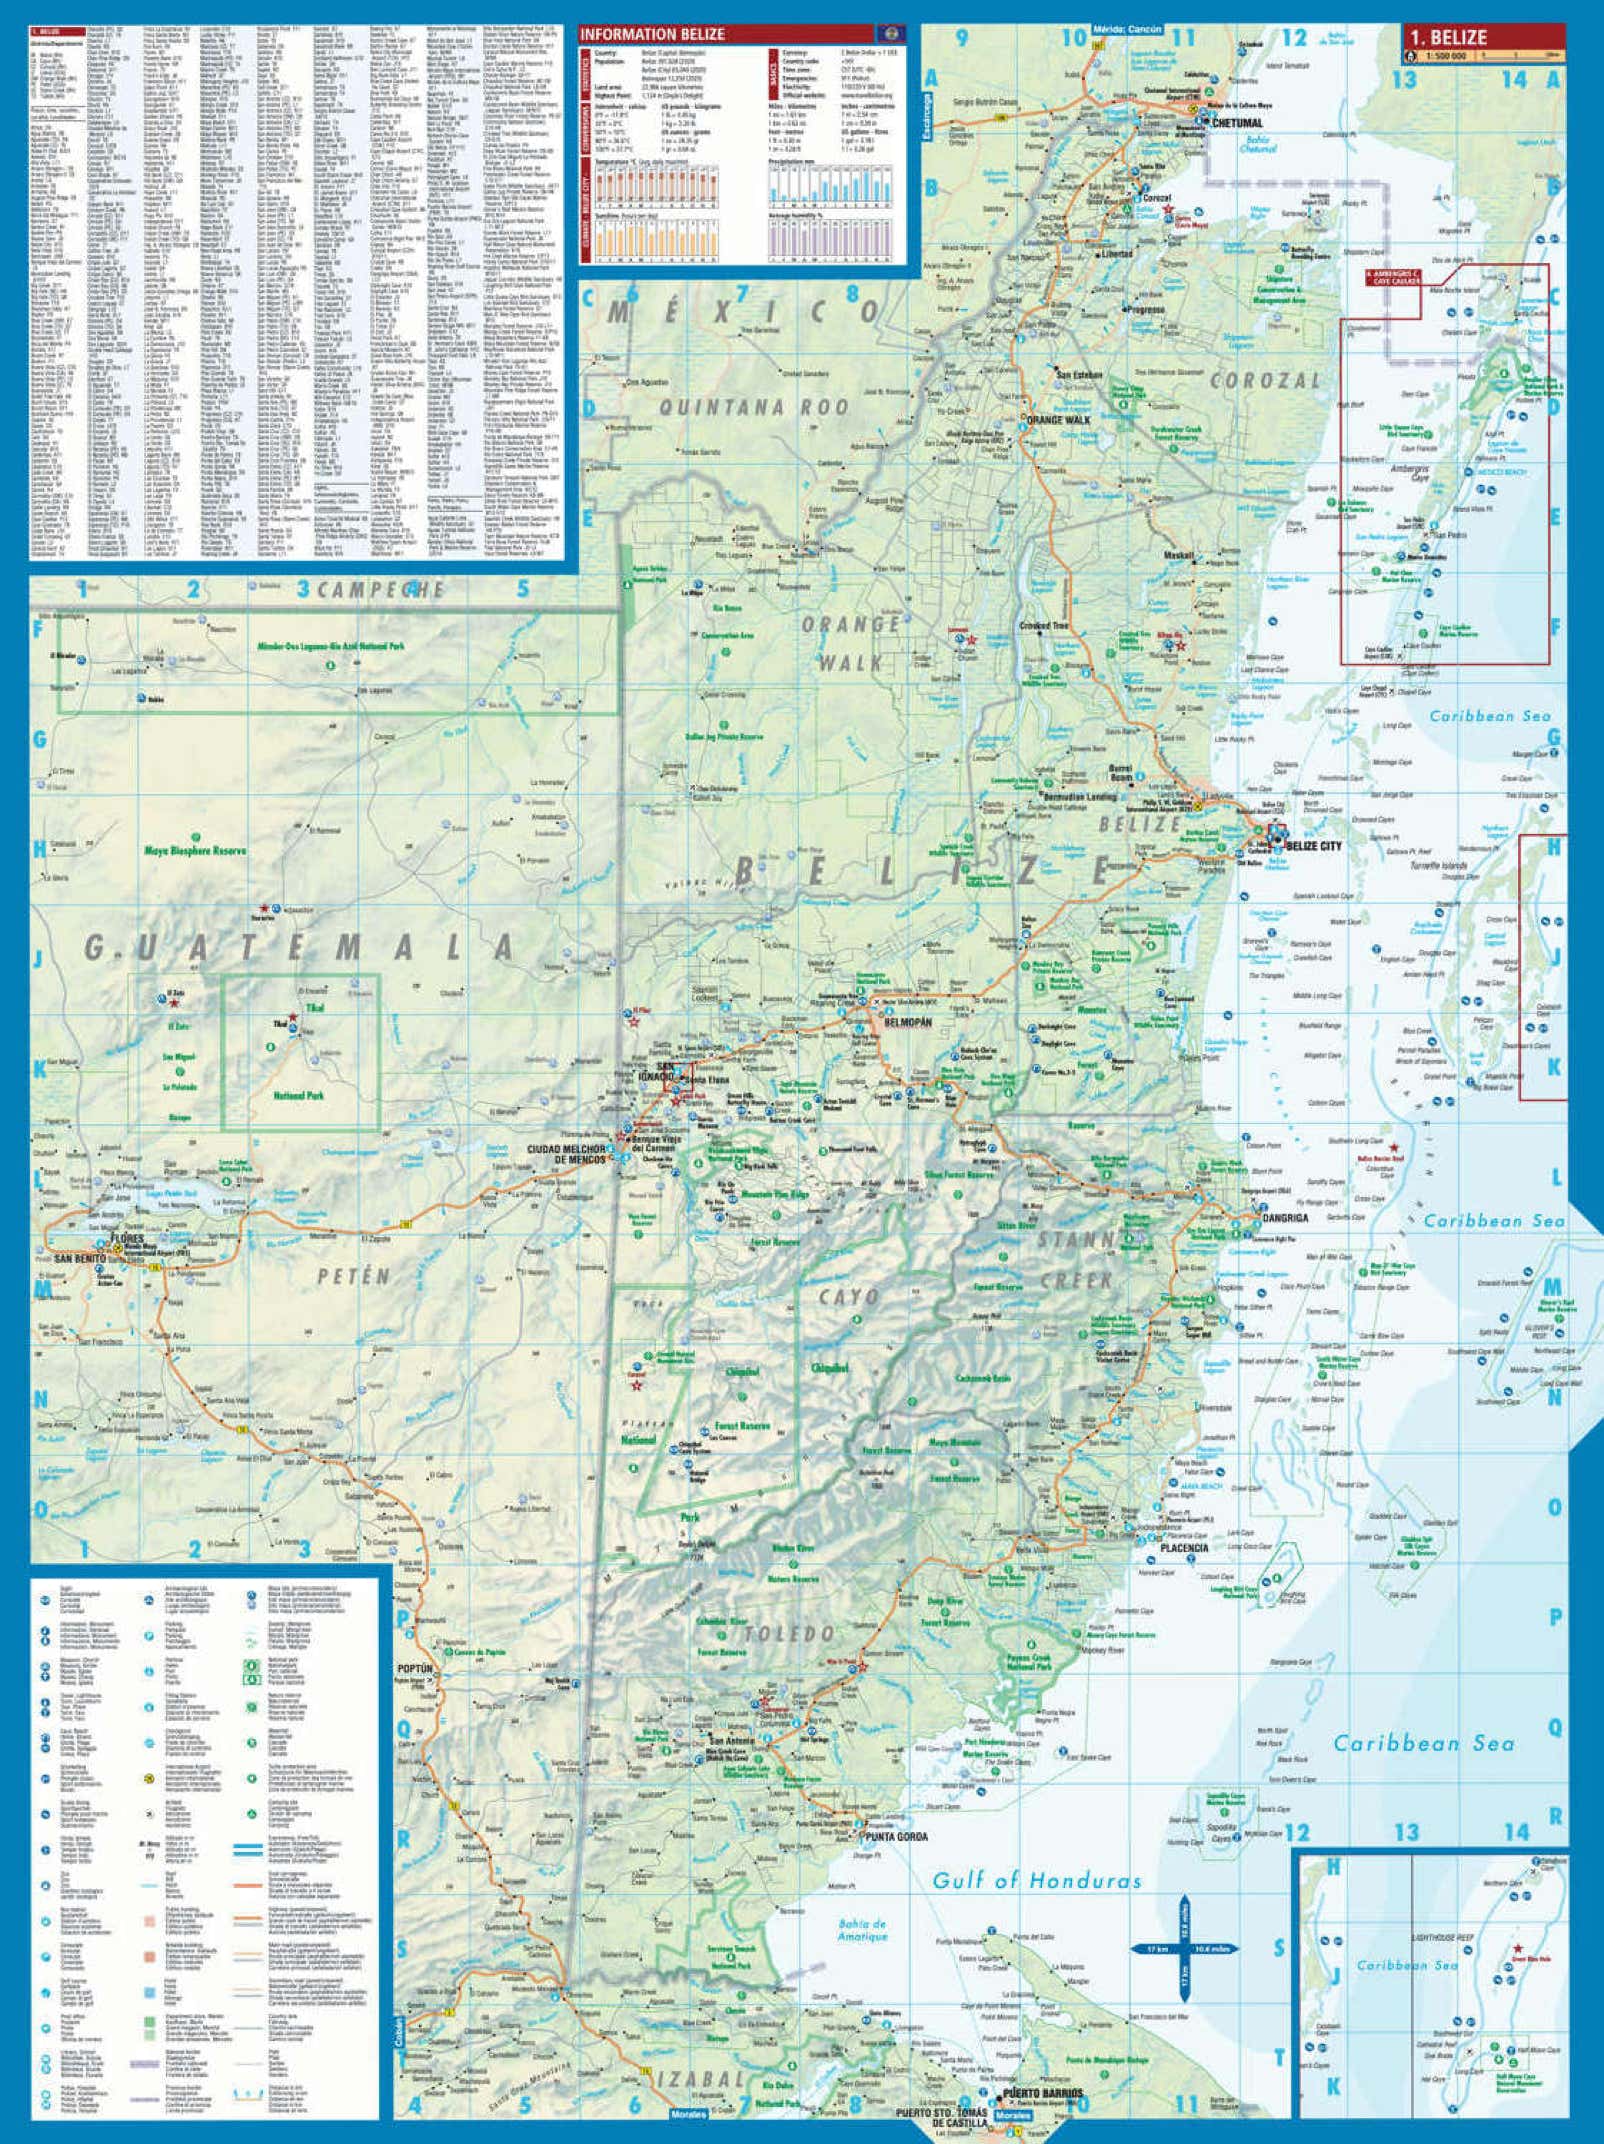 Belize Borch Map - Seite 2